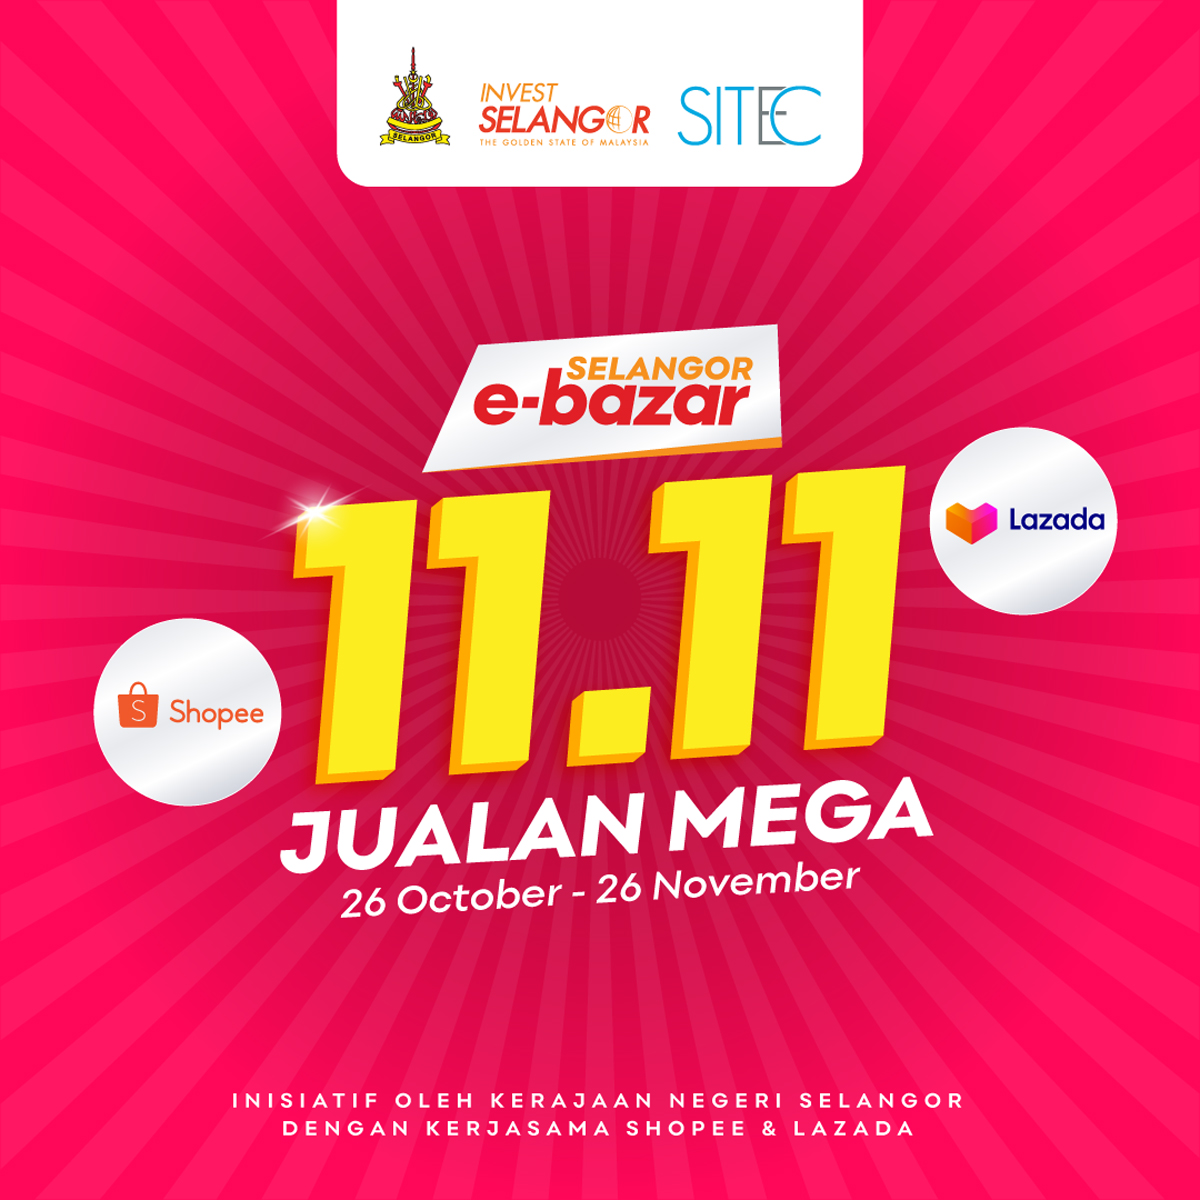 Selangor Govt E-Bazar Mega Sales Campagne